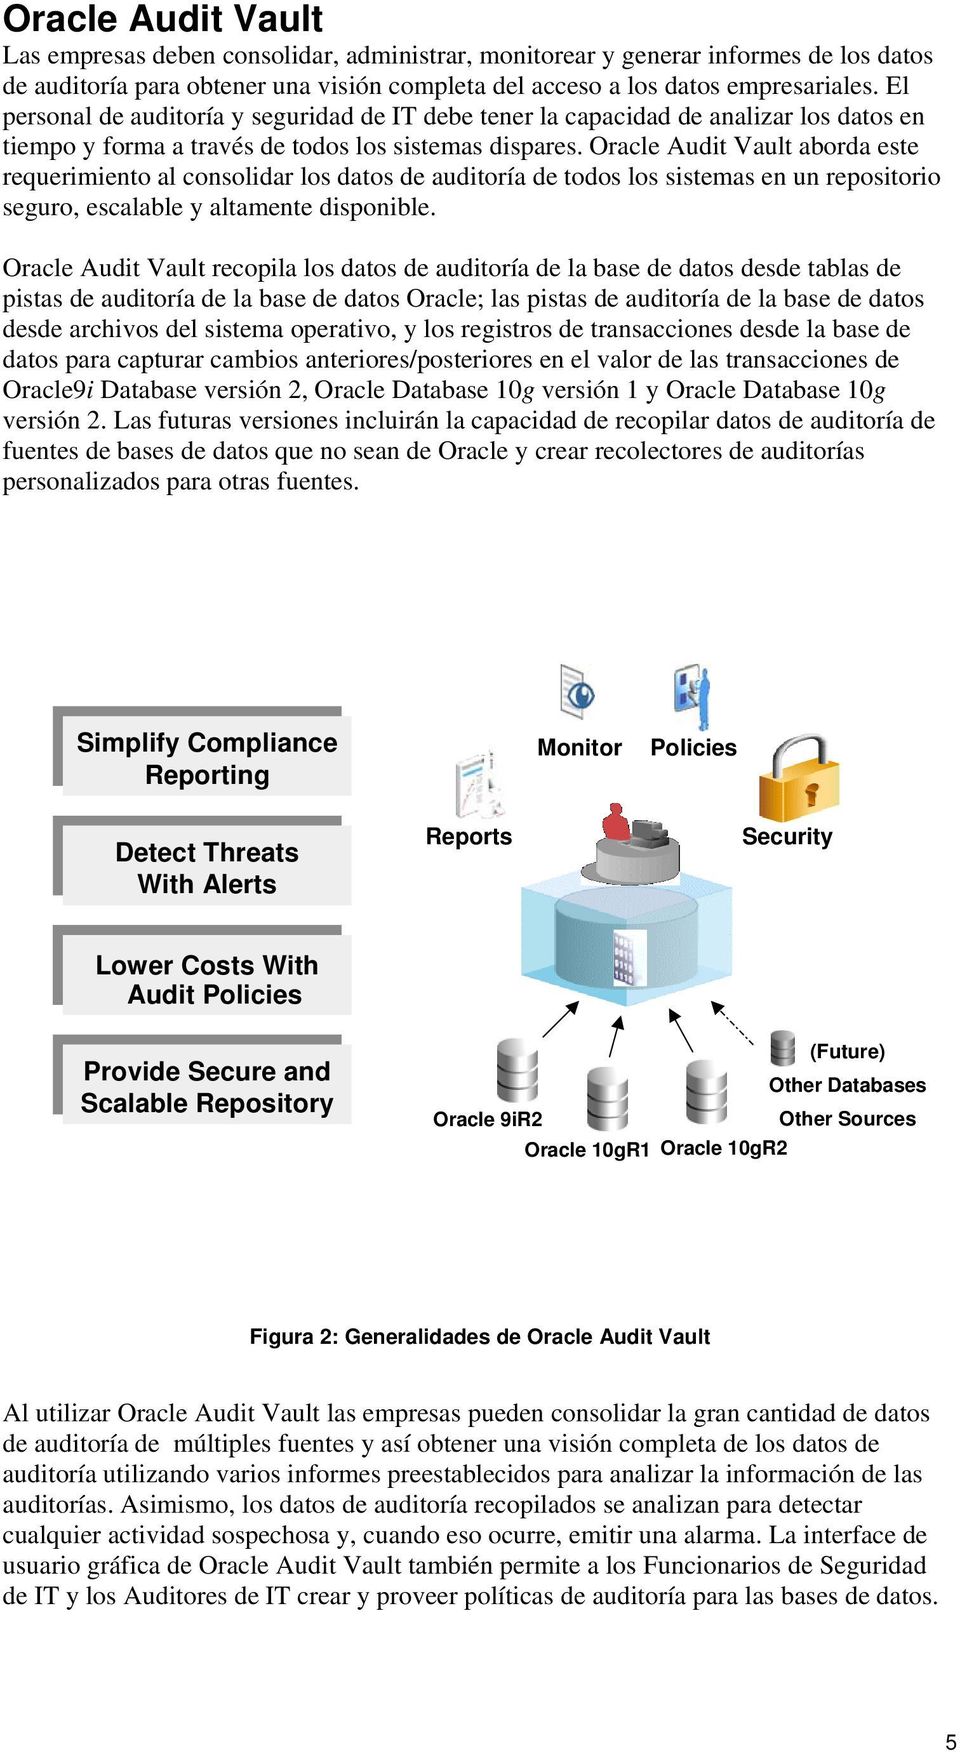 Oracle Audit Vault aborda este requerimiento al consolidar los datos de auditoría de todos los sistemas en un repositorio seguro, escalable y altamente disponible.